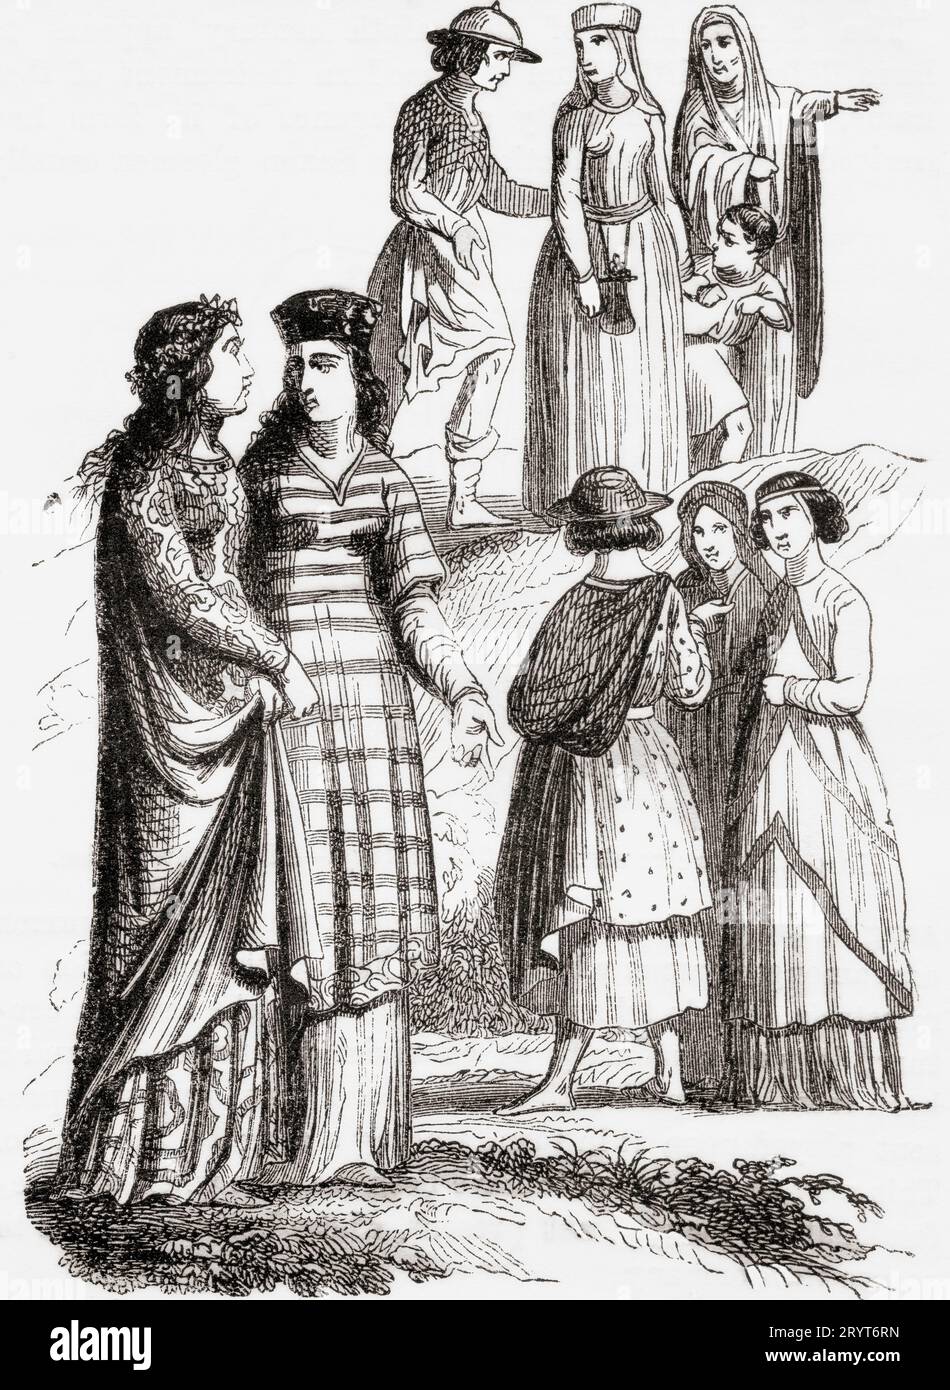 Normannische Kostüme des 11. Jahrhunderts. Adlige, Damen und Bürger. Aus Cassell's Illustrated History of England, veröffentlicht 1857. Stockfoto